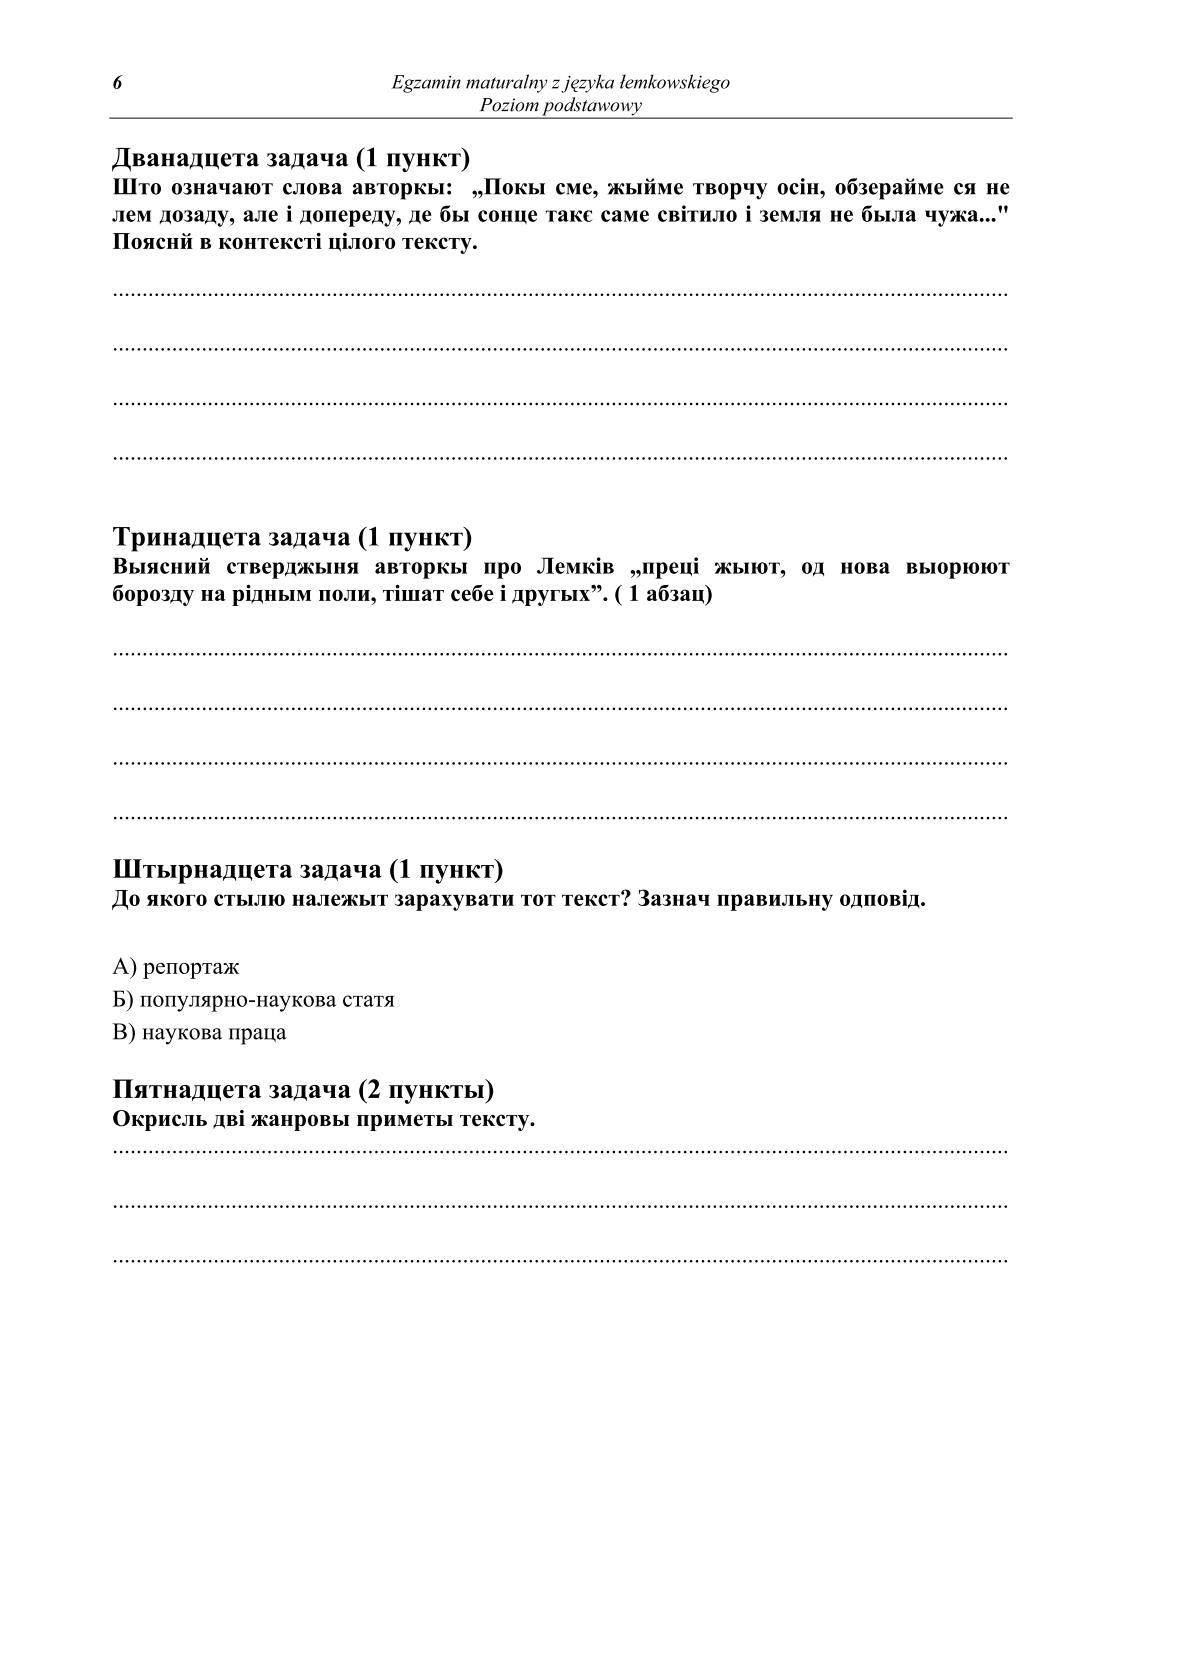 pytania-jezyk-lemkowski-poziom-podstawowy-matura-2014-str.6